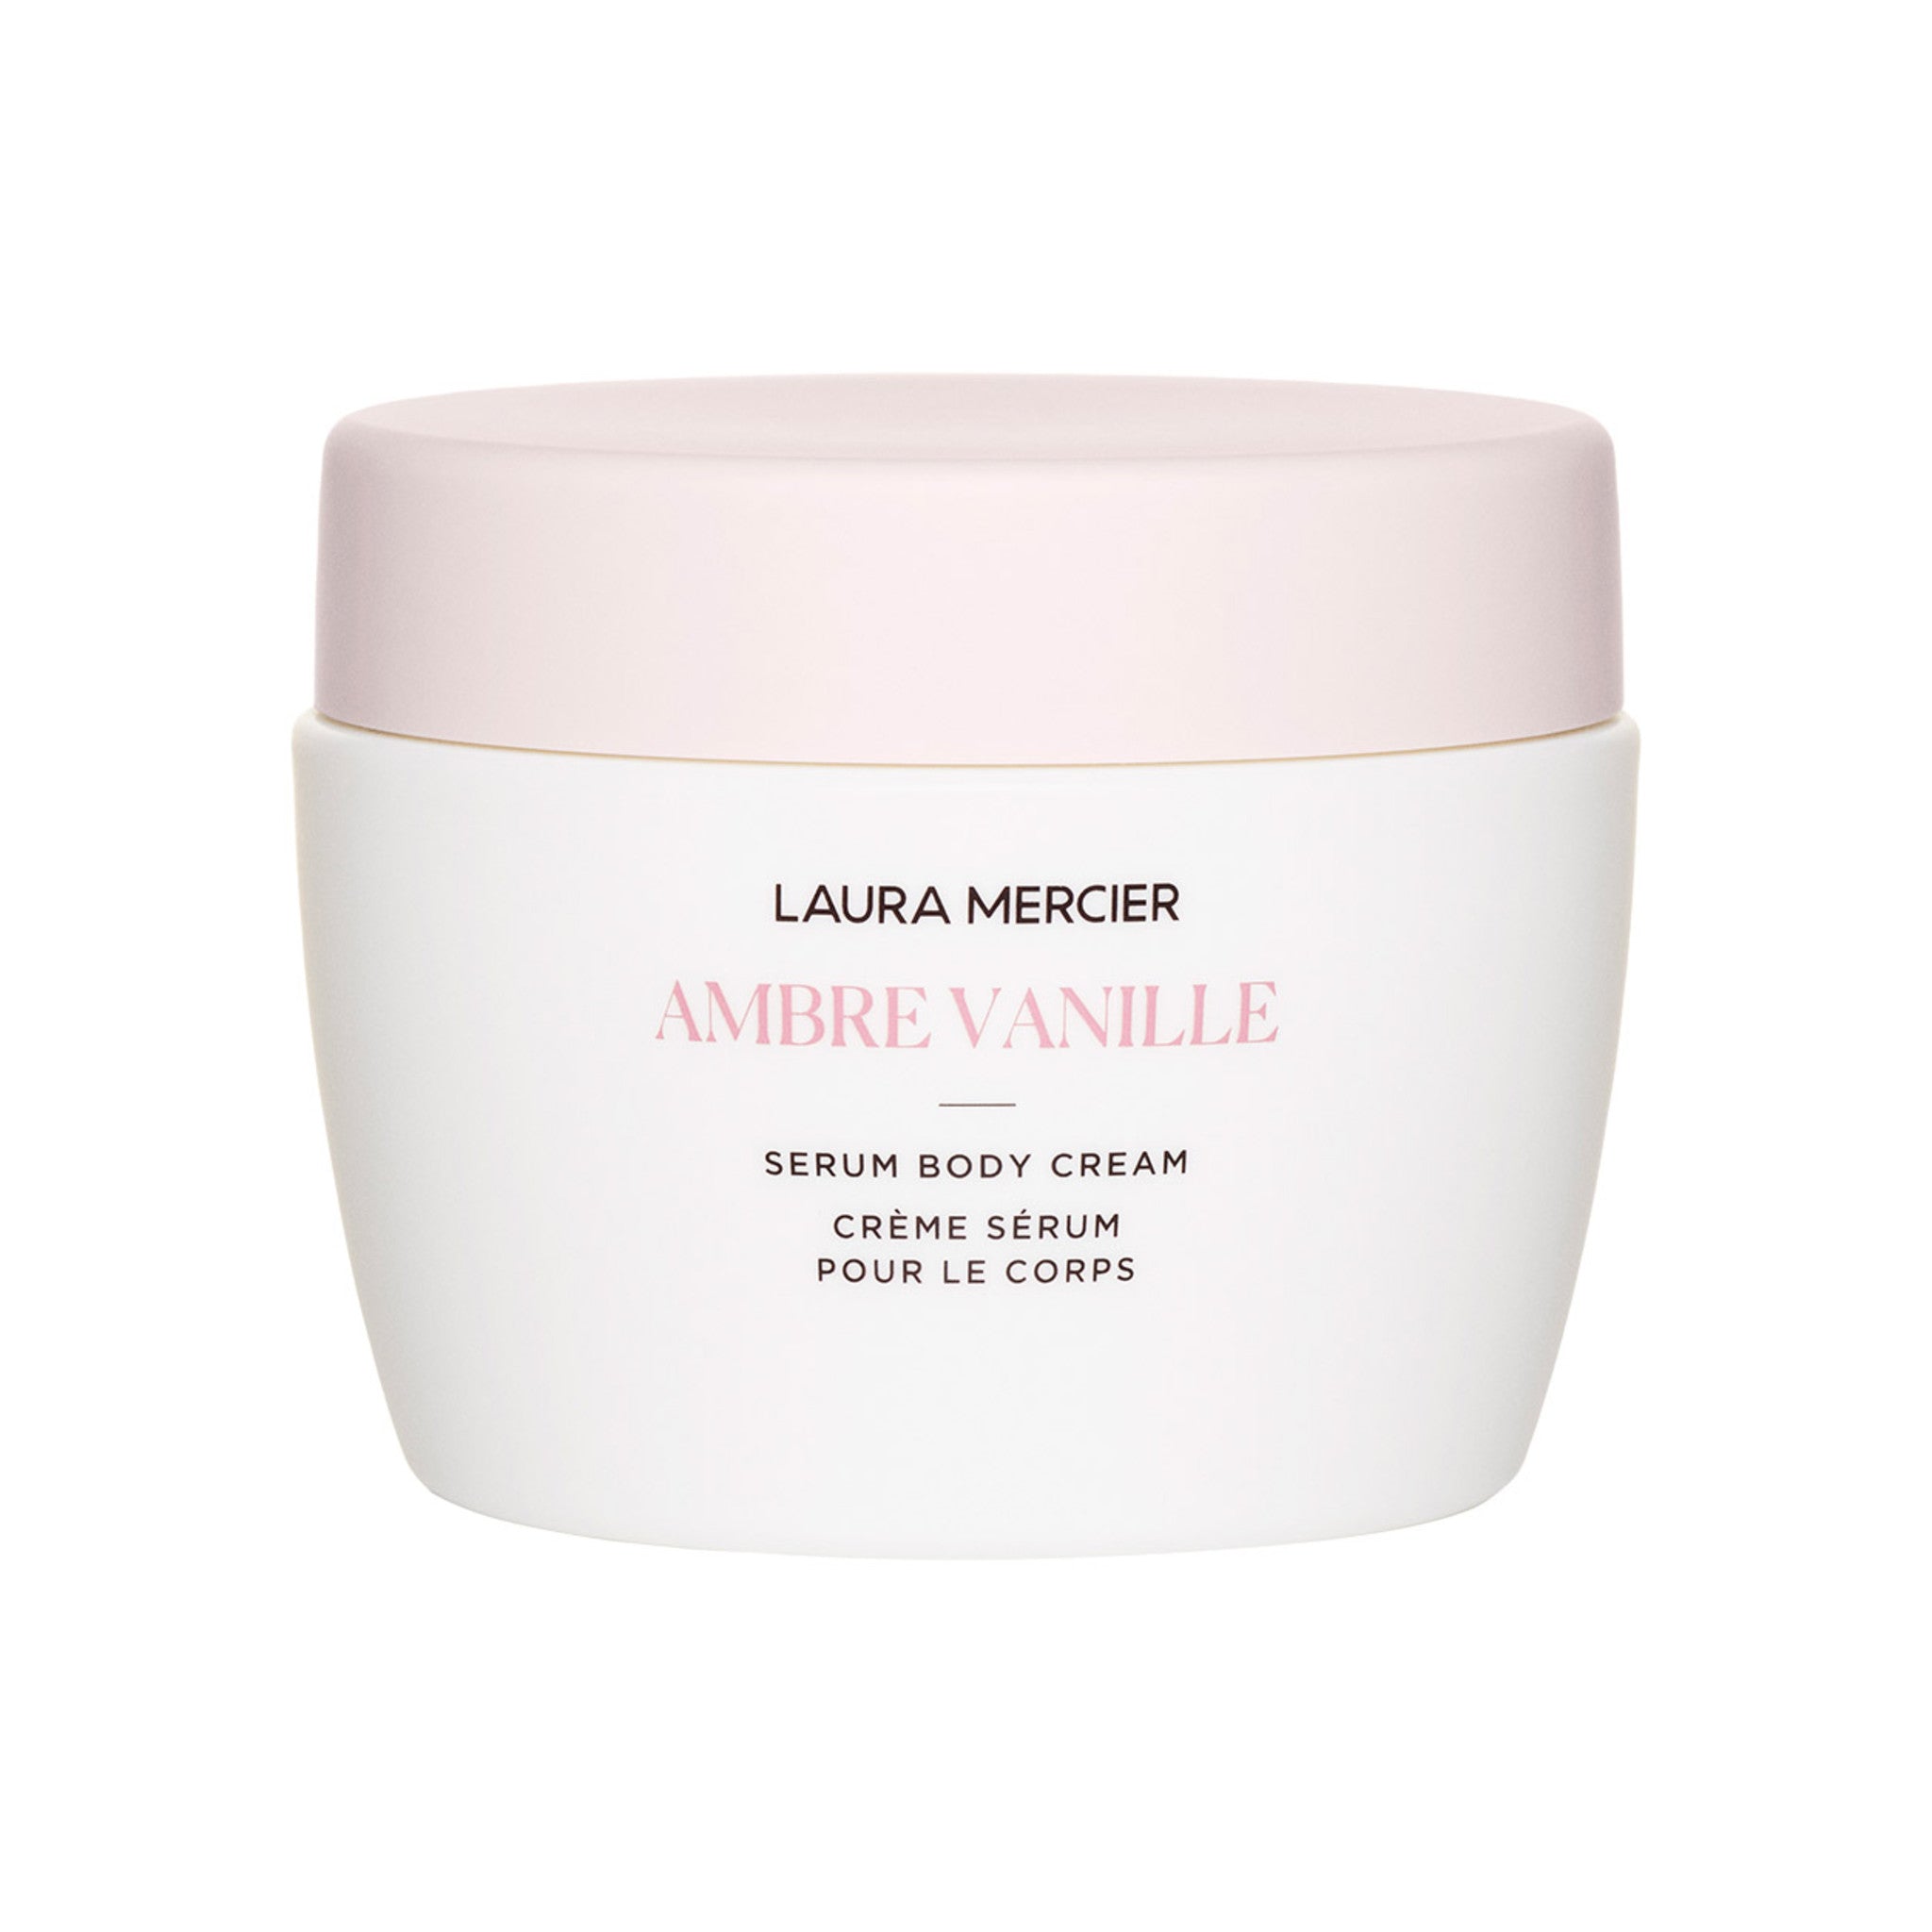 Laura Mercier Ambre Vanille Serum Body Cream – Laura Mercier 